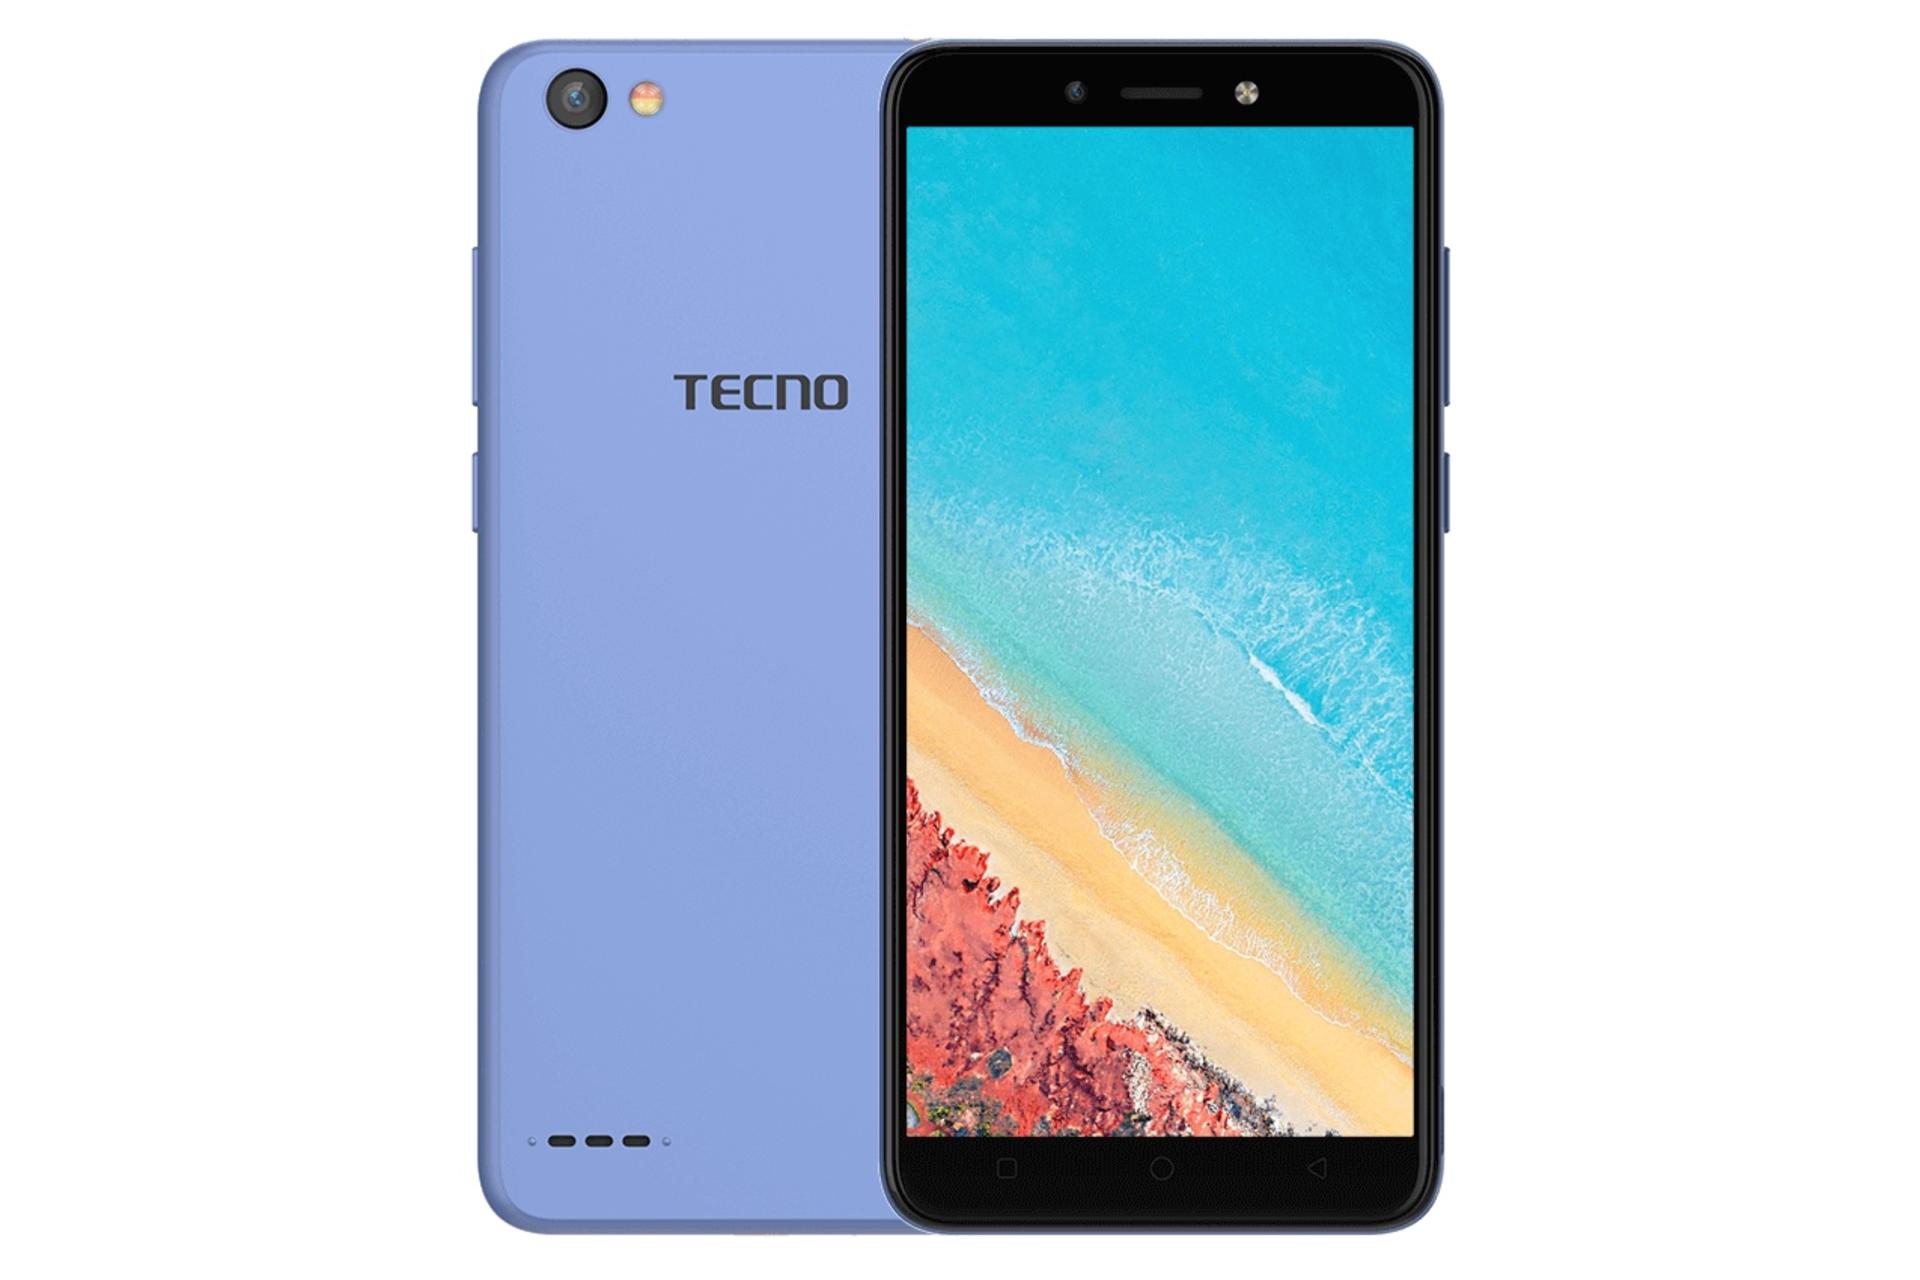 گوشی موبایل پاپ 1 پرو تکنو Tecno Pop 1 Pro آبی